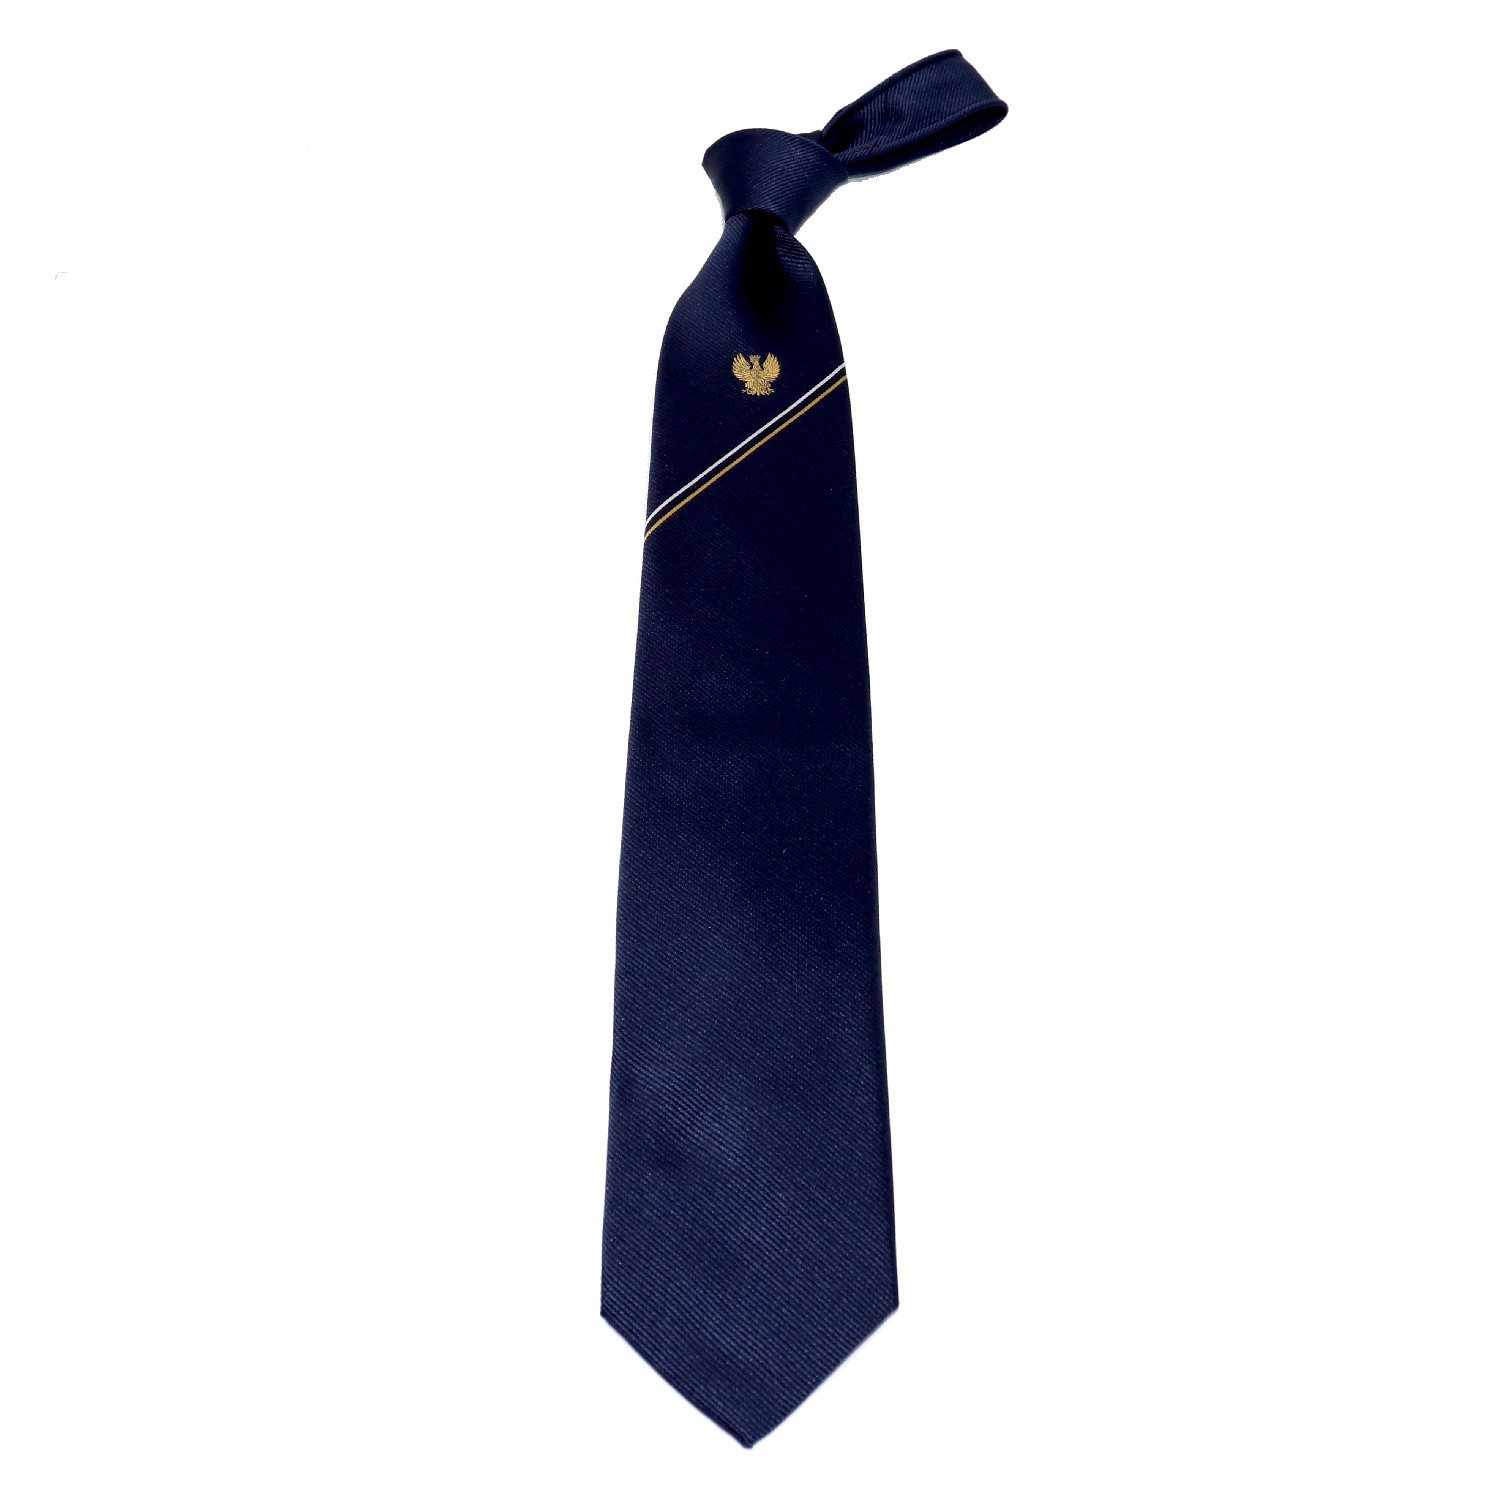 Raffinierte handgefertigte Krawatte aus 100 % Seide, blauer Hintergrund und  goldenes Adleremblem am Knoten - Italo Ferretti handgemachte Luxus Krawatten